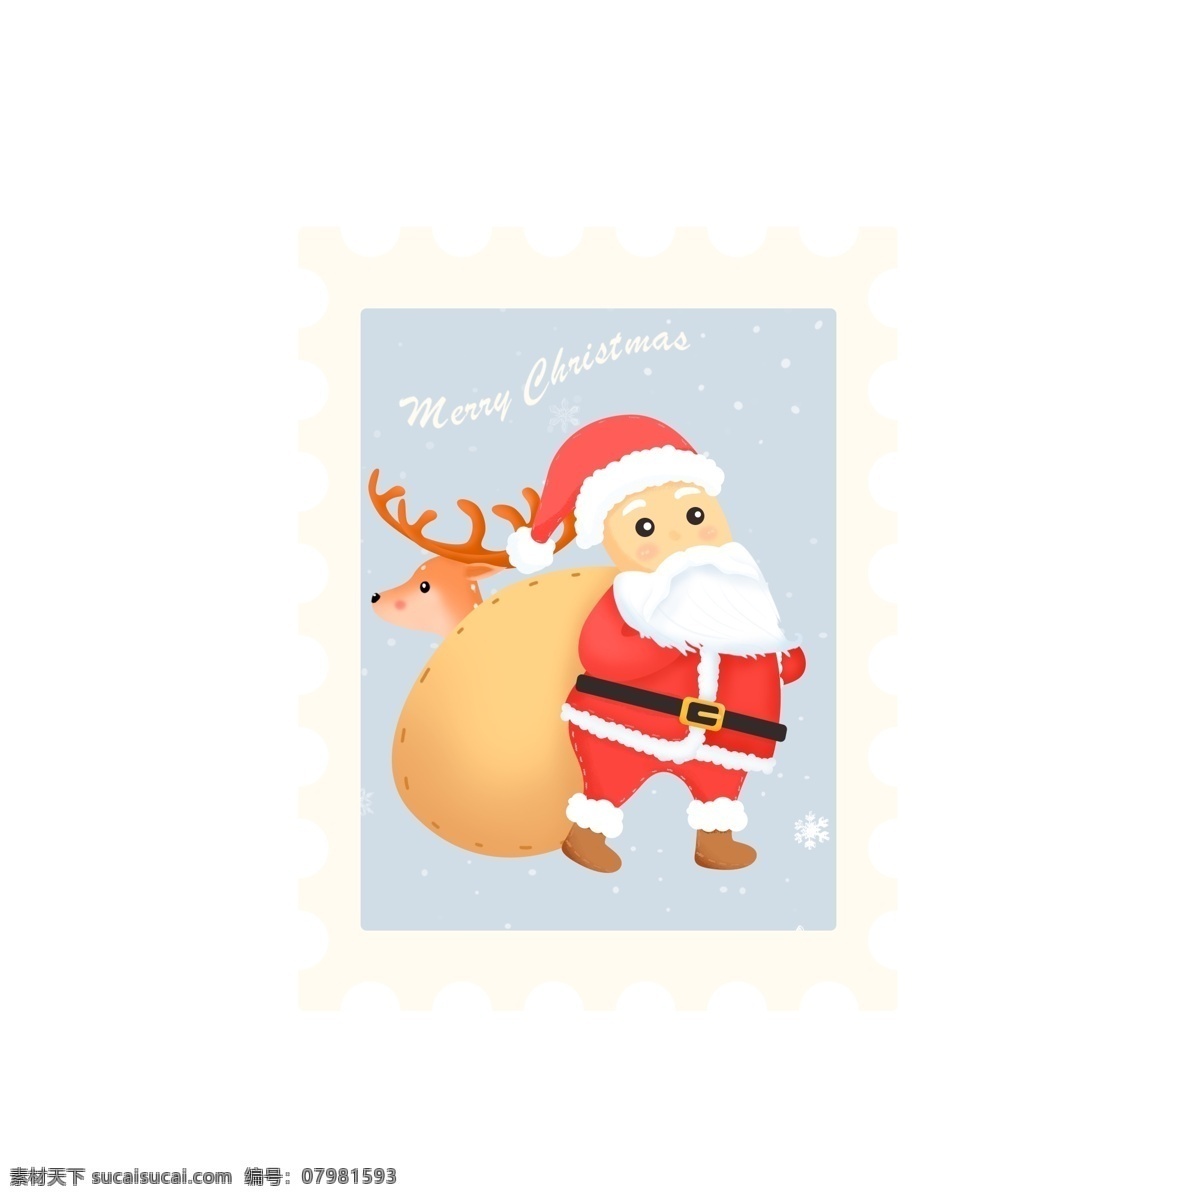 可爱 卡通 圣诞节 邮票 贴纸 圣诞老人 麋鹿 元素 节日 雪花 小贴纸 礼物袋 圣诞帽 圣诞快乐